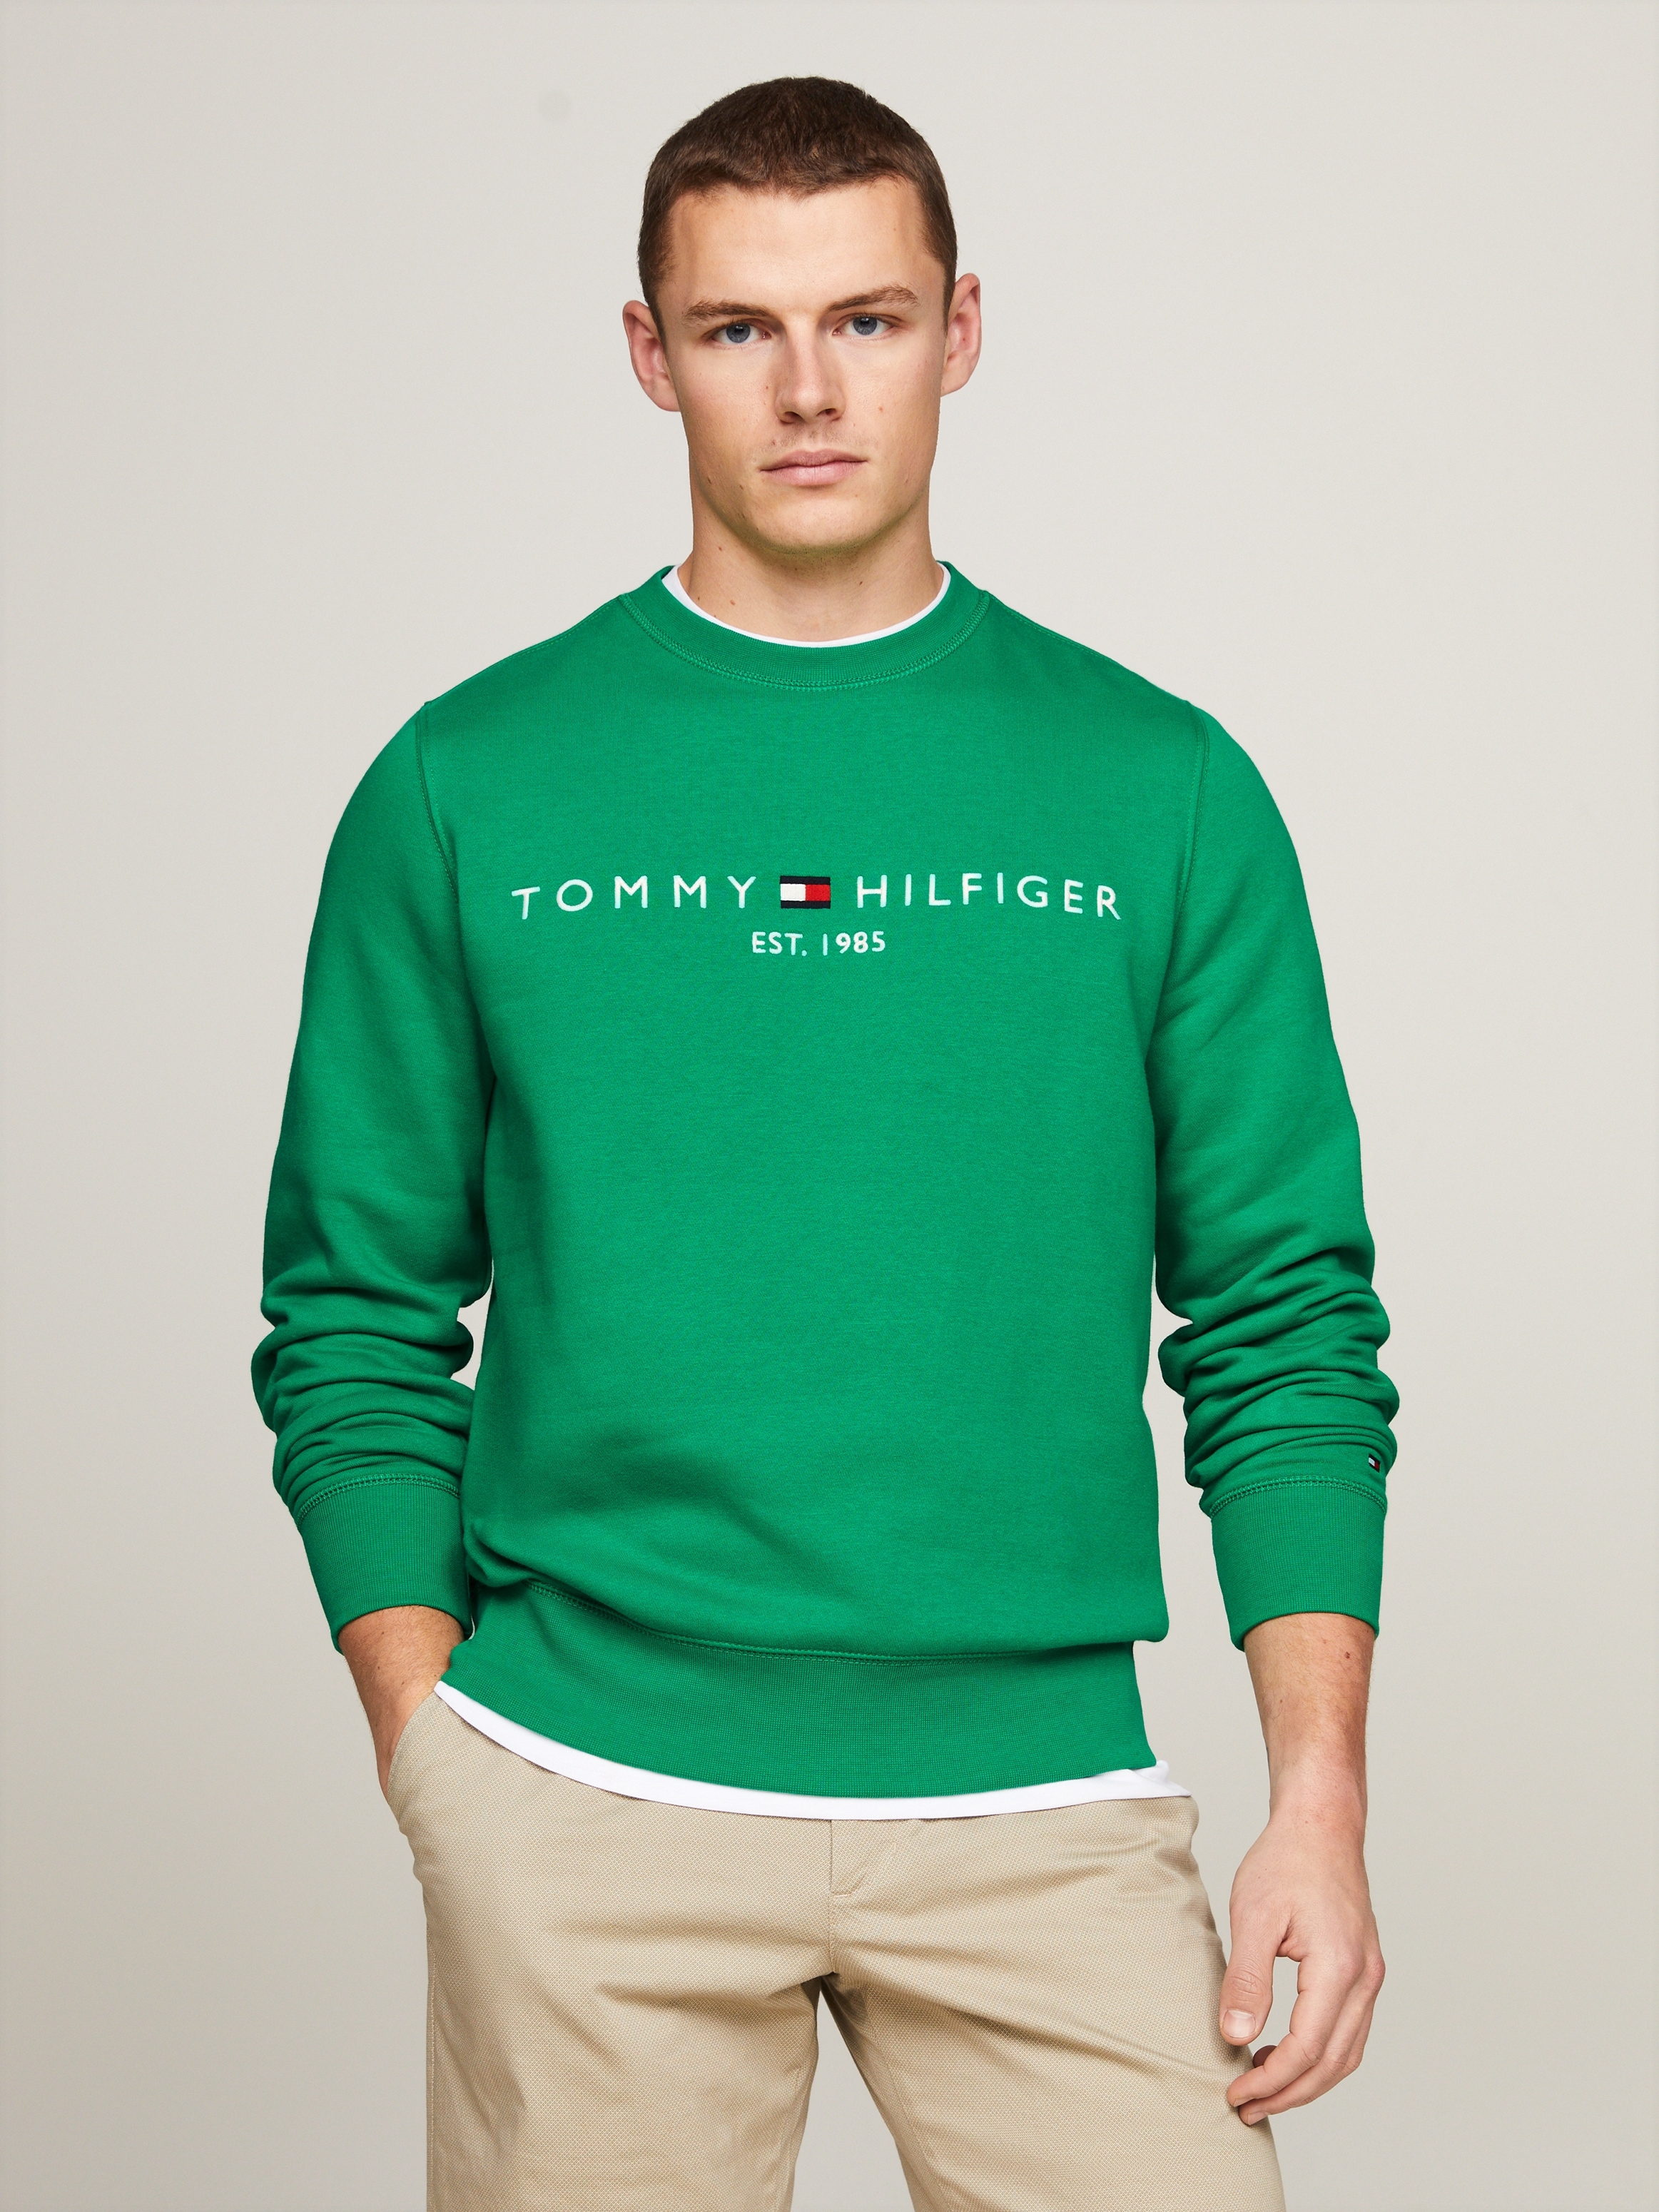 Hilfiger bei Tommy Rundhalsausschnitt OTTO SWEATSHIRT«, LOGO mit online Sweatshirt »TOMMY kaufen